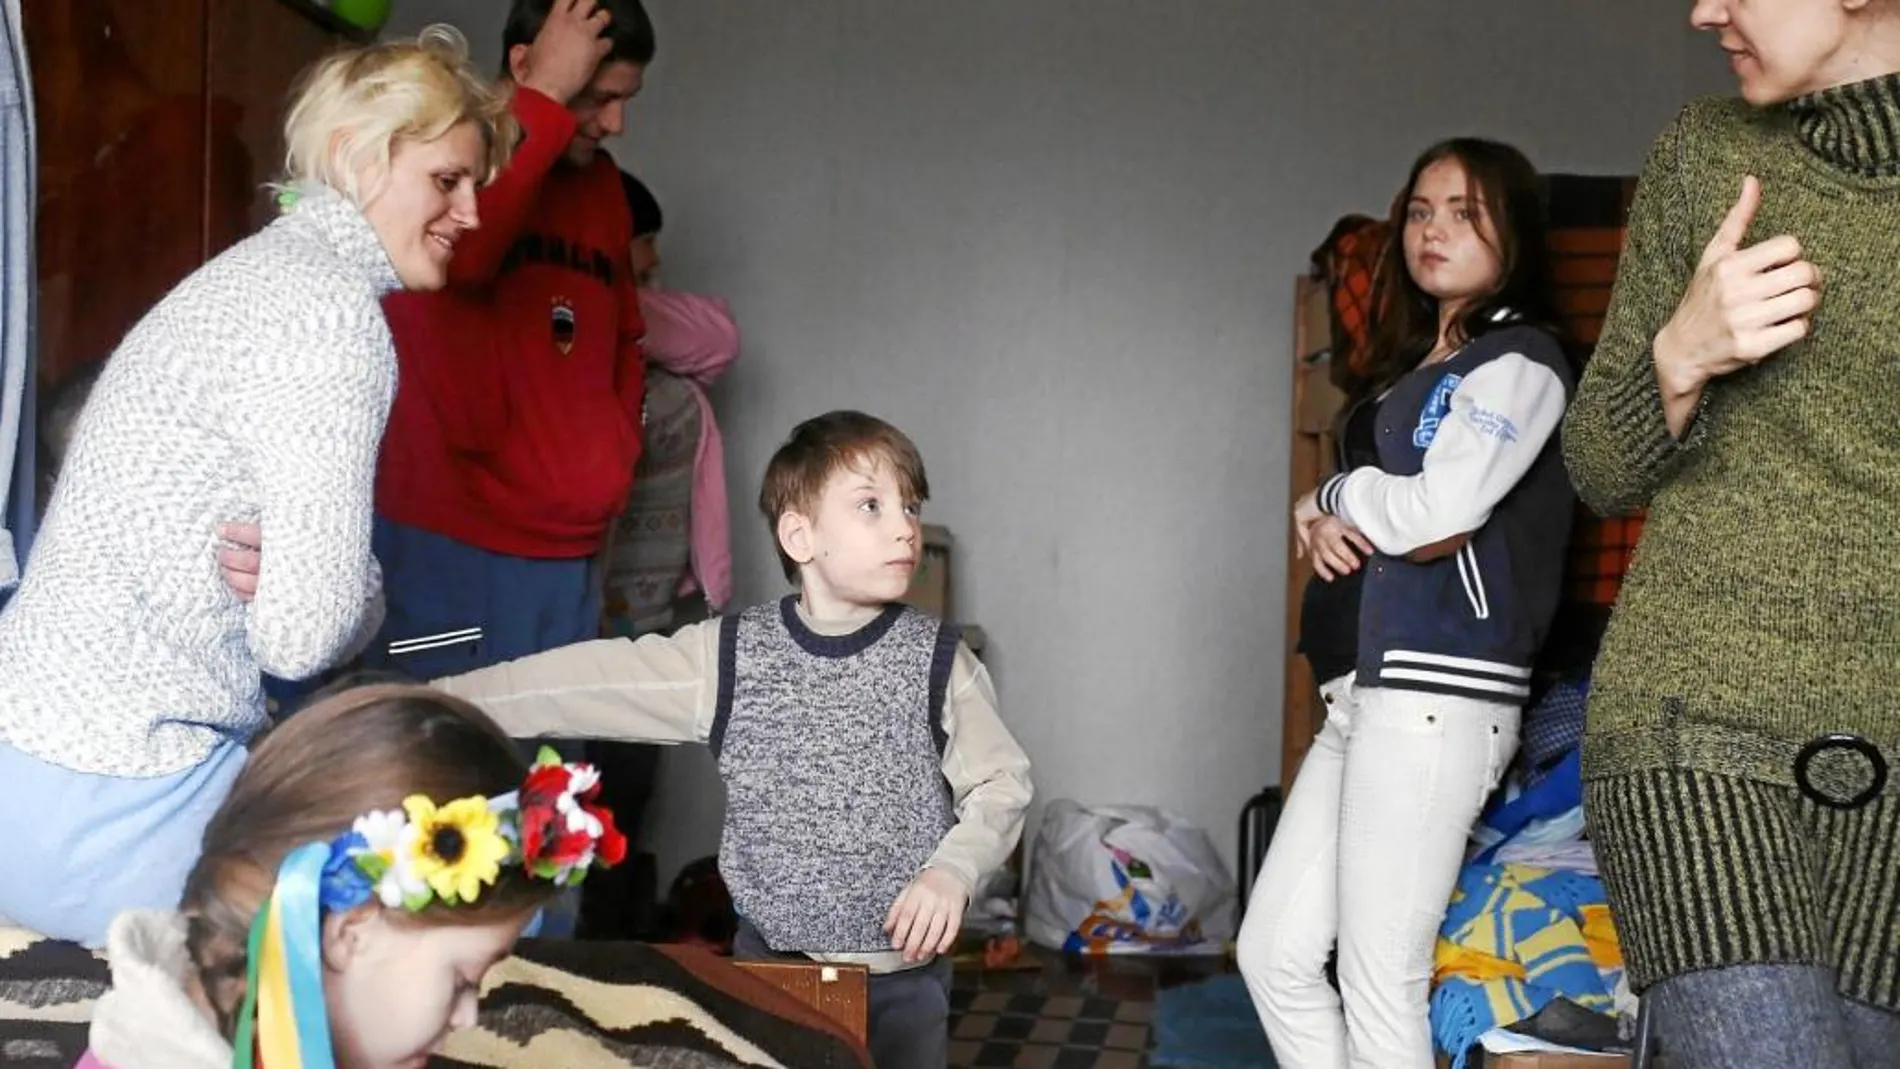 Fmilias rotas en un refugio en Artemiusk. El niño fue adoptado después de que su madre le abandonara al inicio del conflicto